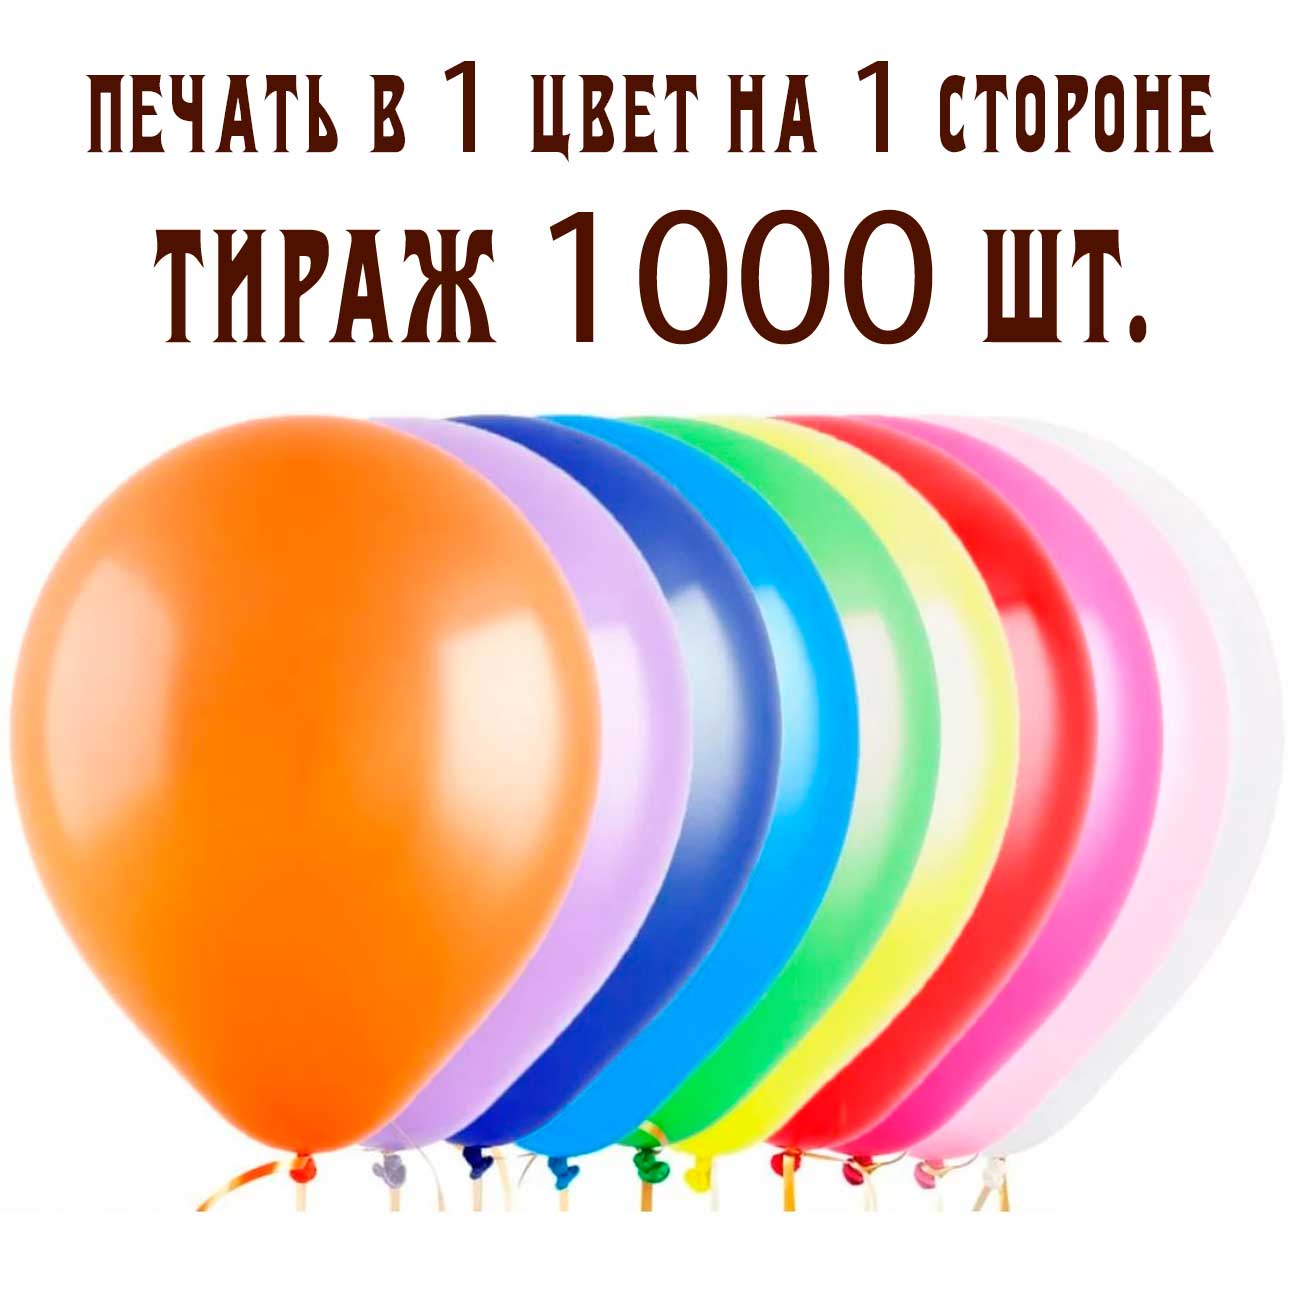 Печать на воздушных шарах 1 цвет 1 сторона тираж 1000